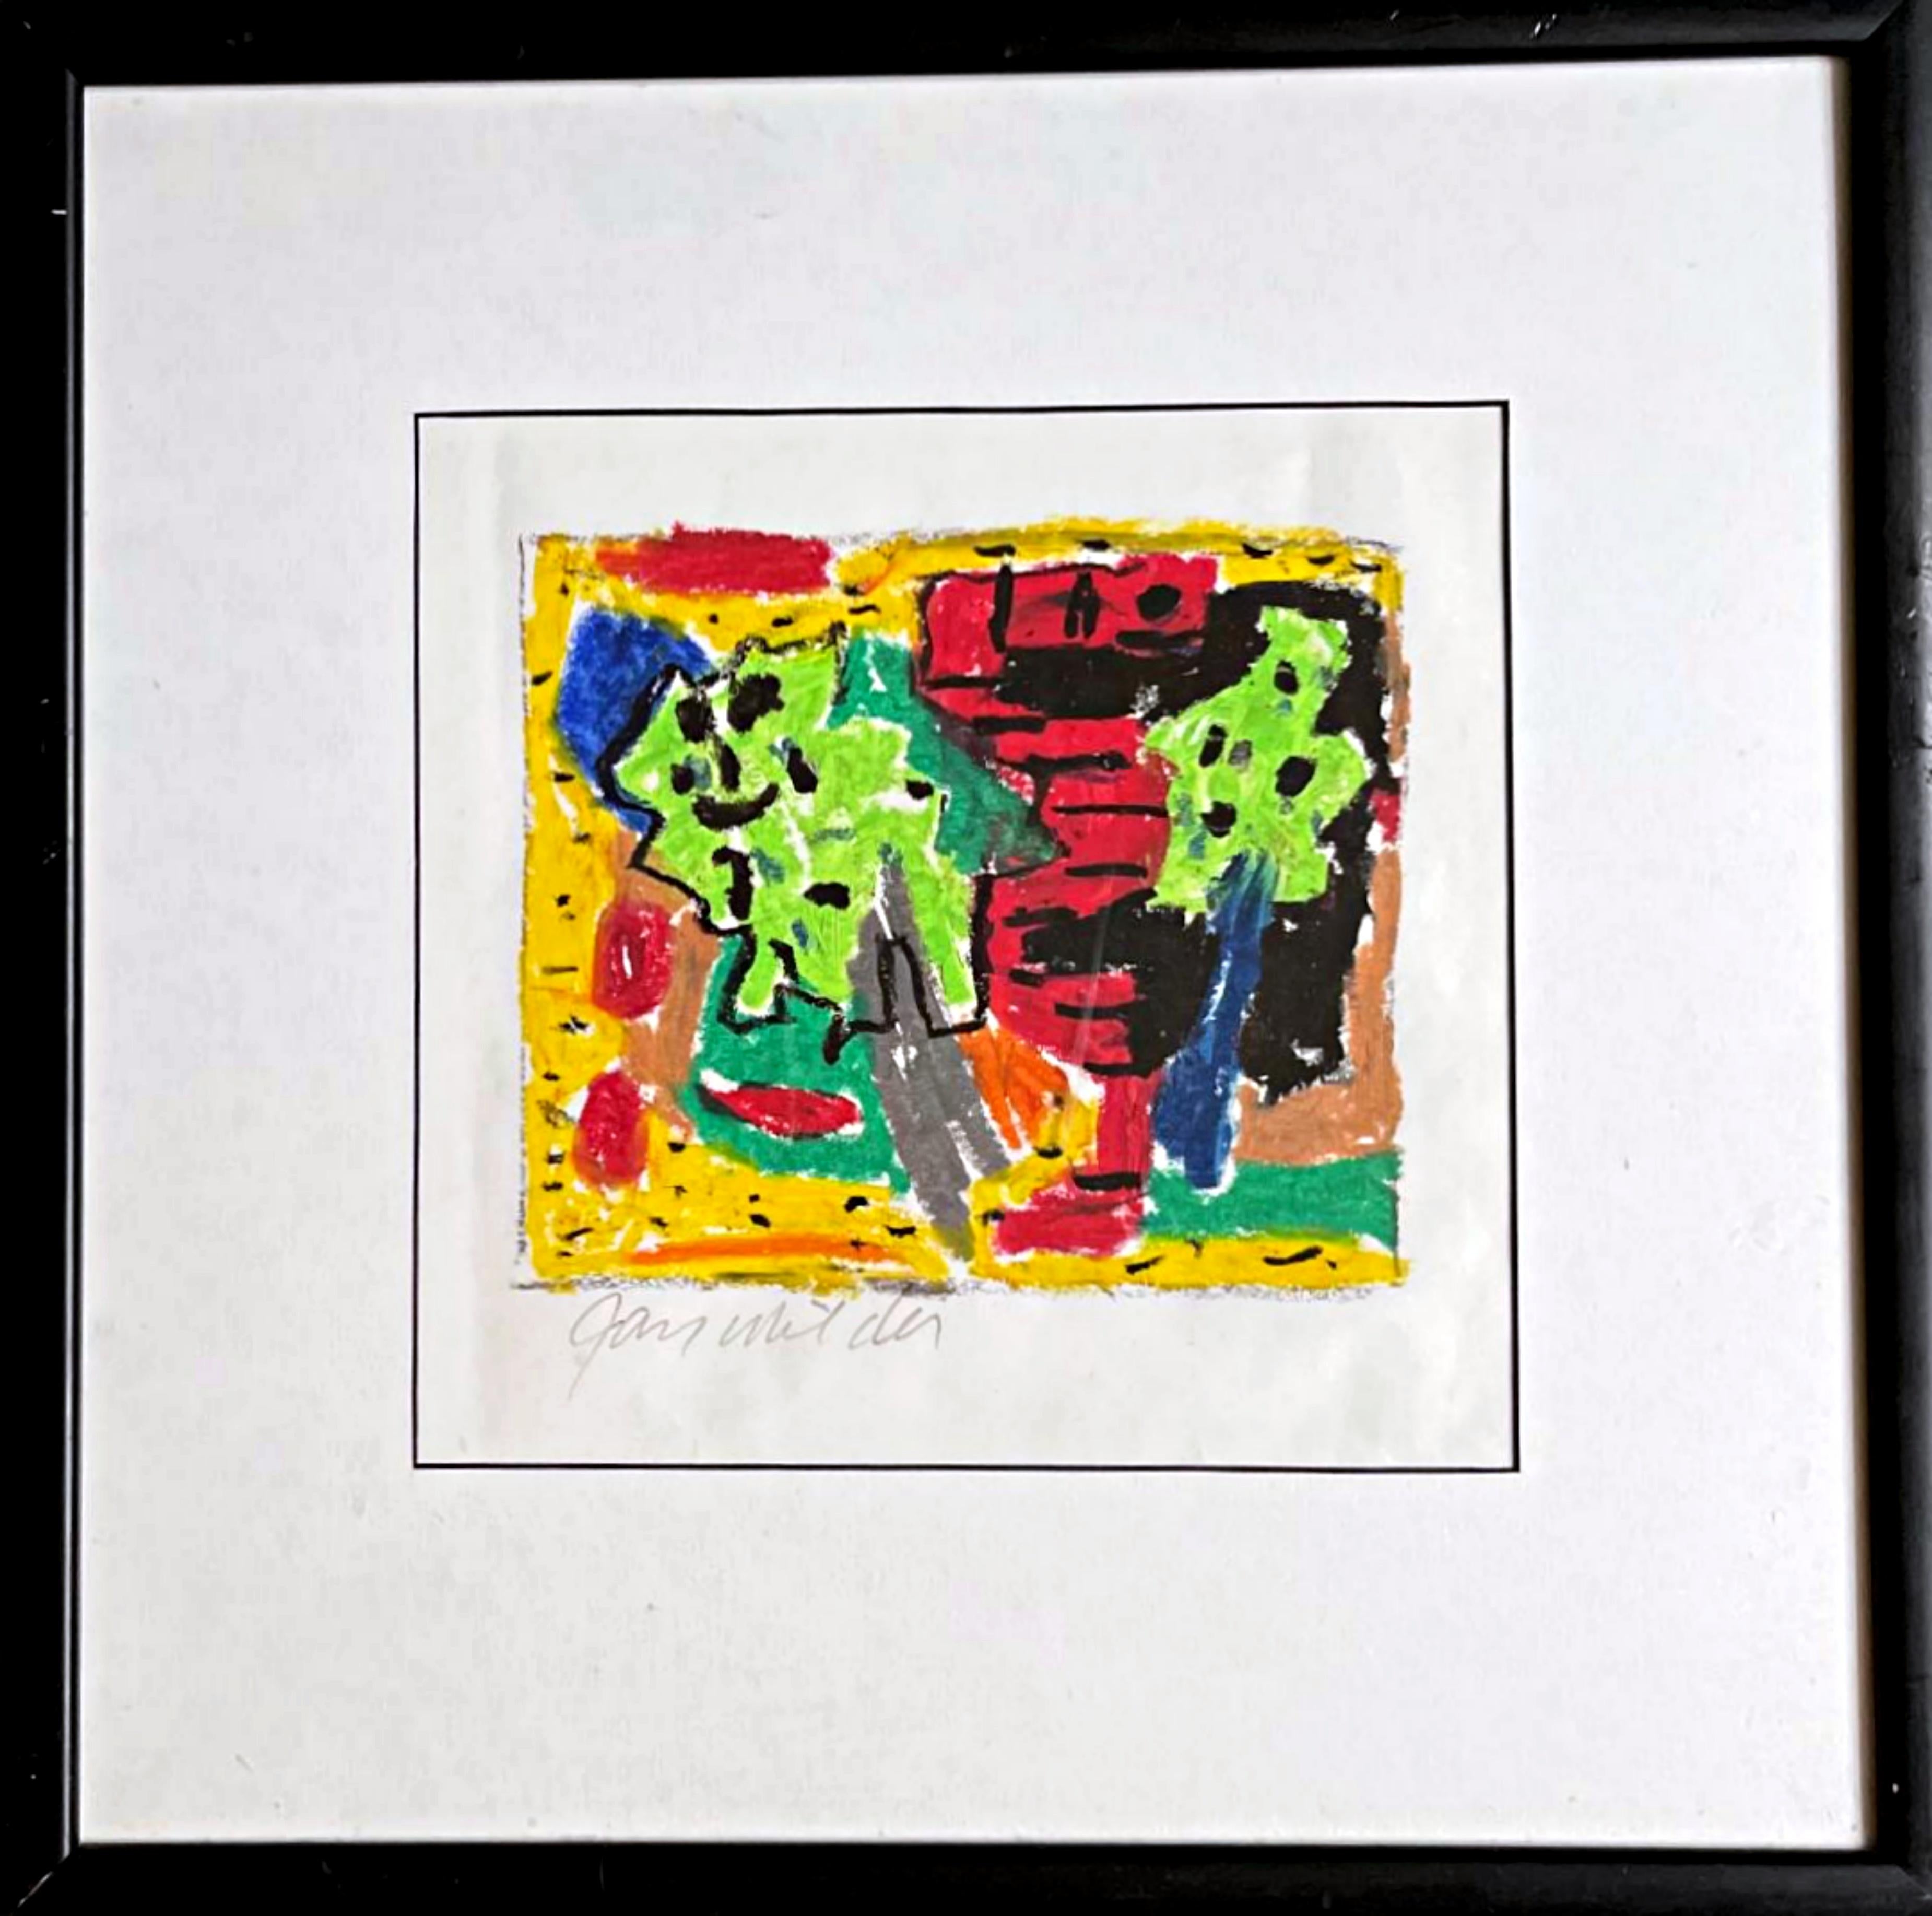 Abstrakt-expressionistisches Gemälde Kabbalah ohne Titel, inspiriert von mystischen abstrakten Bildern  (Abstrakter Expressionismus), Mixed Media Art, von Jay Milder